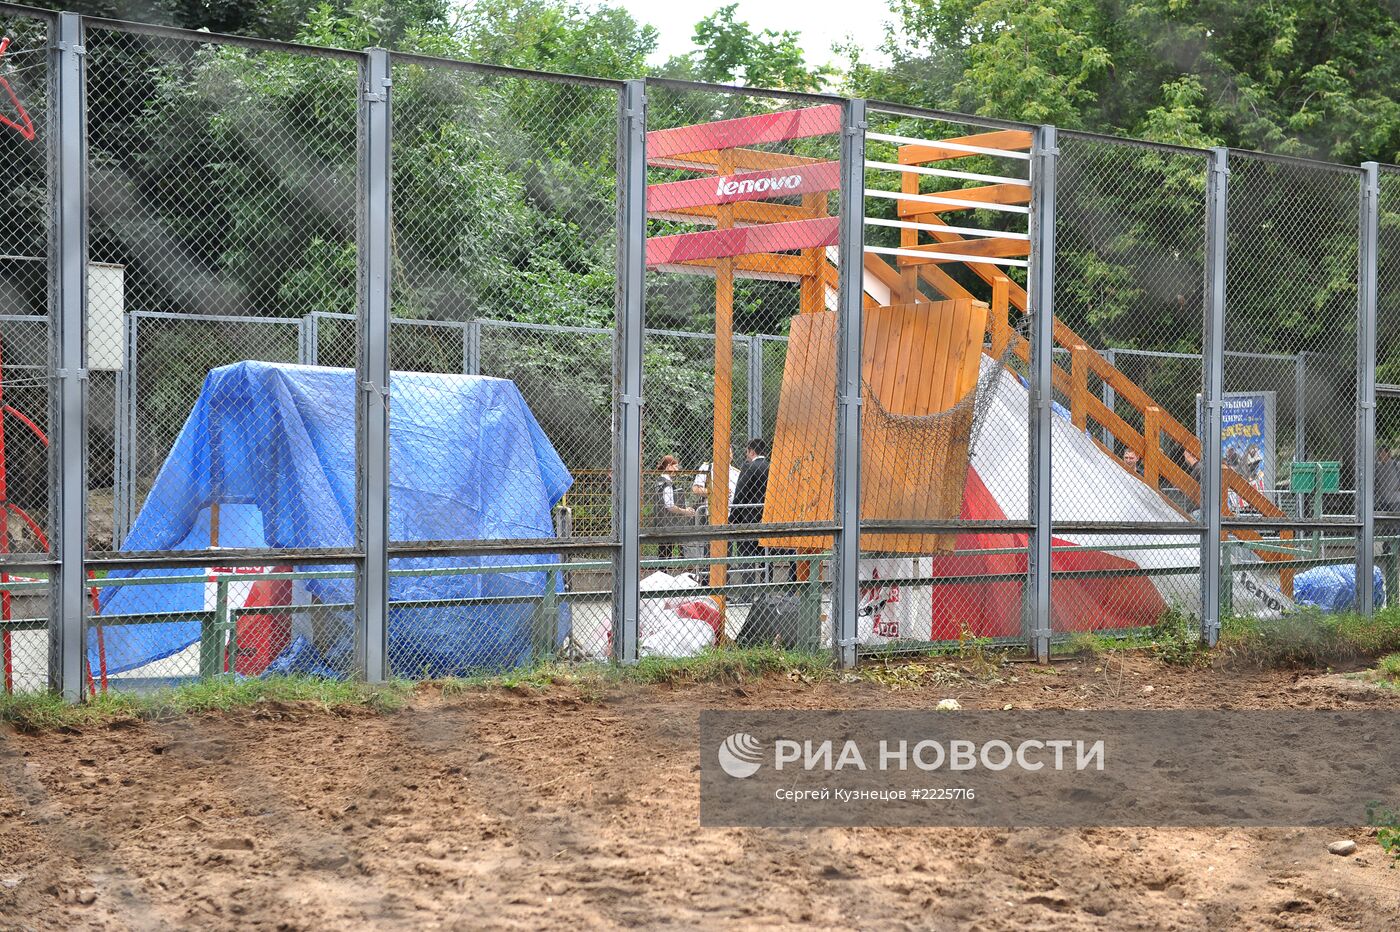 В Московском зоопарке рухнул помост, есть пострадавшие